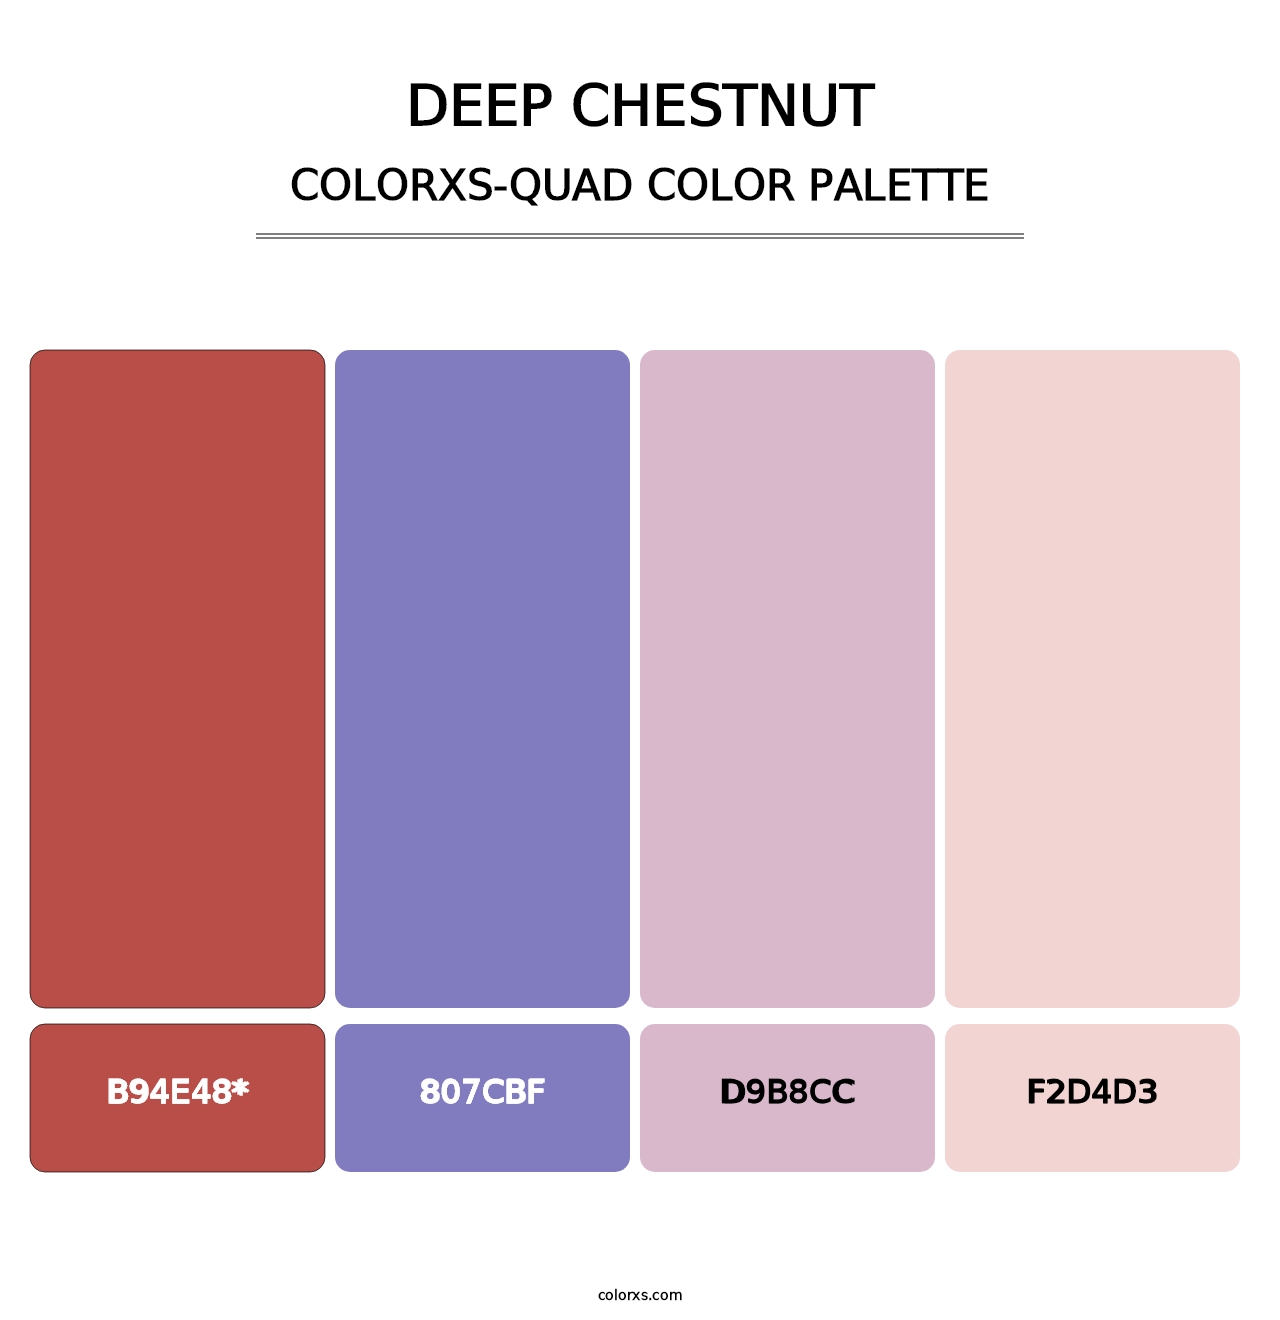 Deep Chestnut - Colorxs Quad Palette